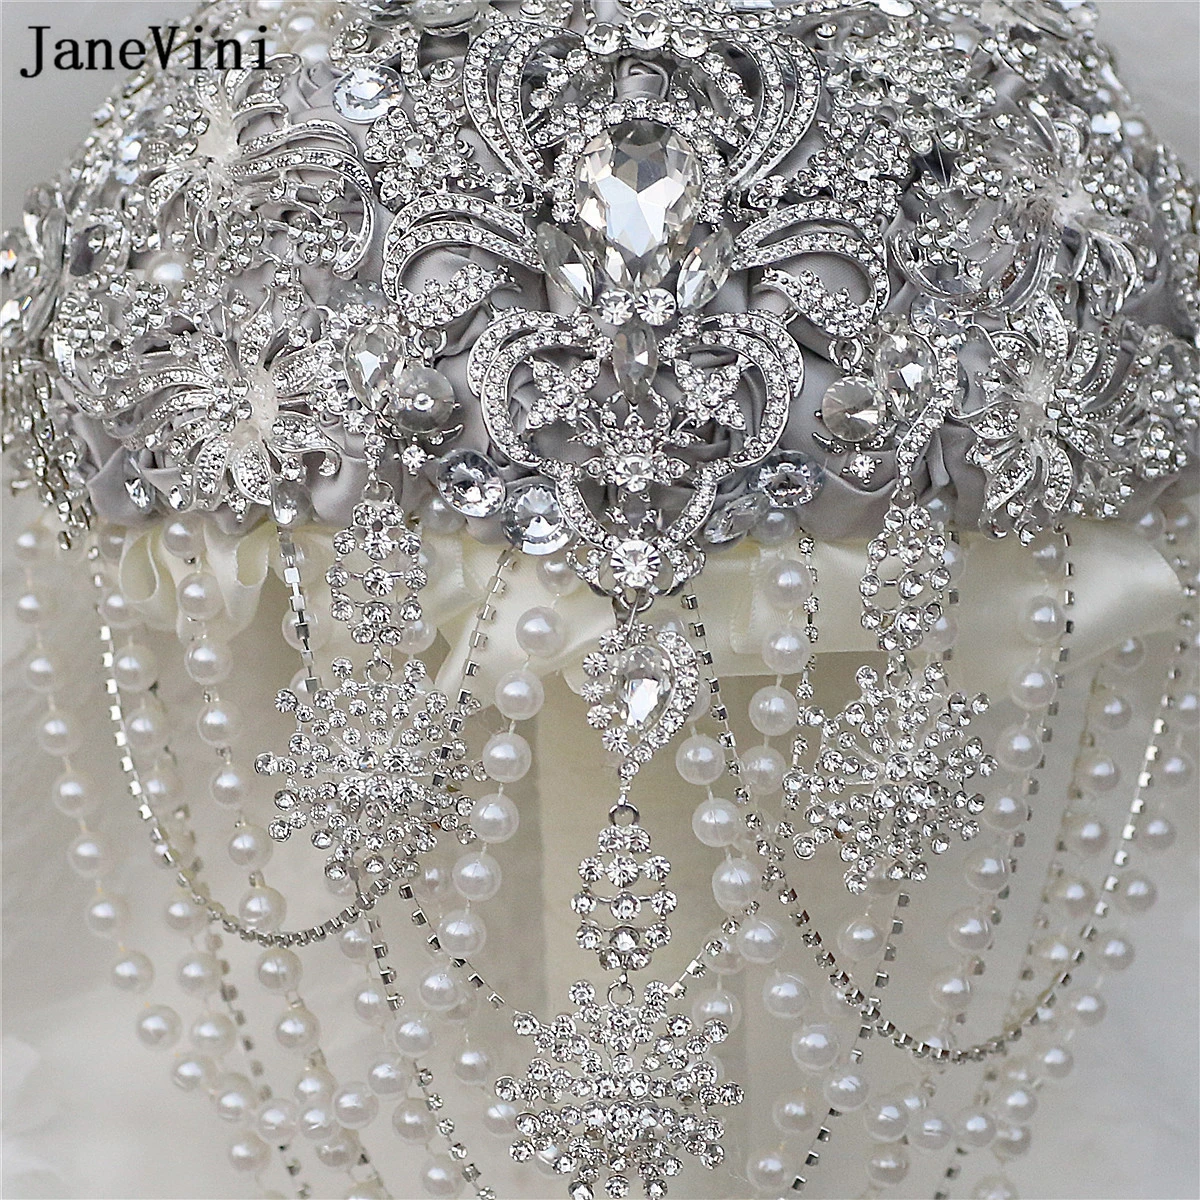 Janevini funkelnde silberne Strass steine Kristall Braut sträuße künstliche Satin Rosen maßge schneiderte Hochzeits strauß Blume für Braut